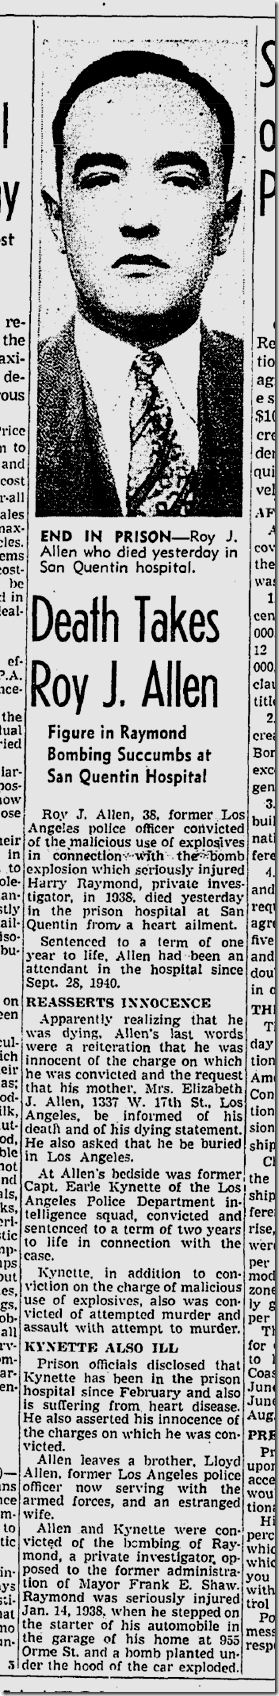 May 18, 1942, Roy Allen Dies